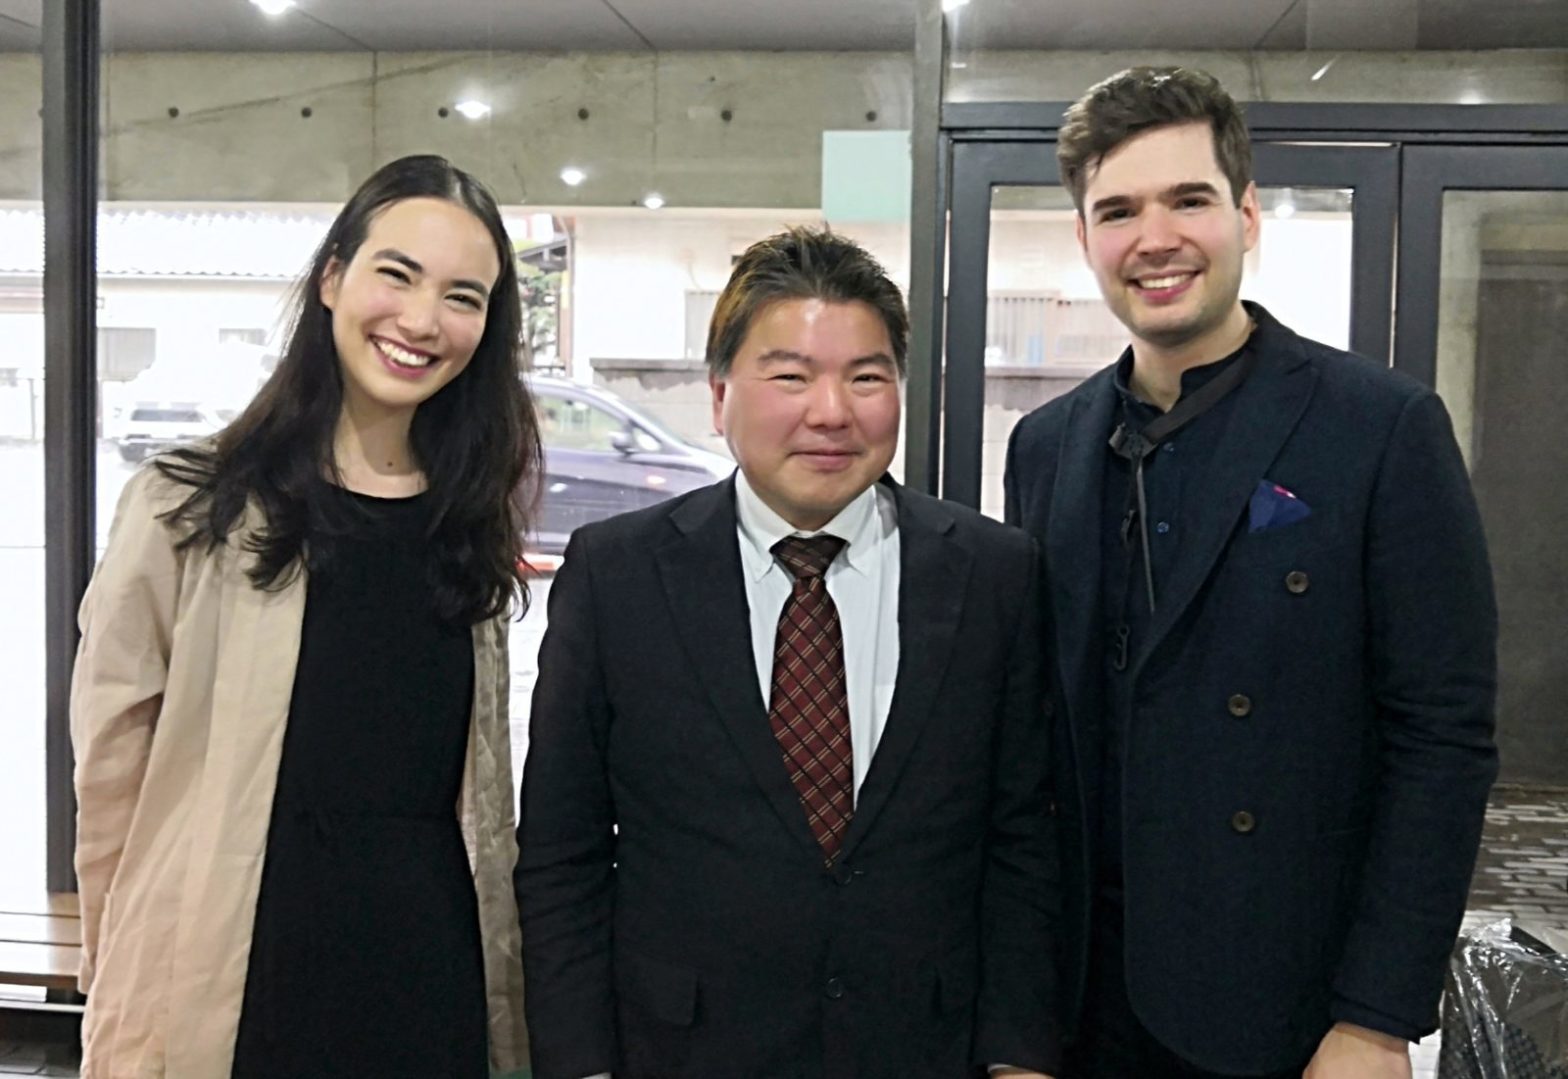 埼玉県富士見市 鶴瀬コミュニティセンターで、セルビア出身のサックス奏者マルコ・ジョンバさんとドイツ人のピアニストシルヴィア・季実子・クルツさん、そしてスーツを着た榊原平さんの3人が立っている光景です